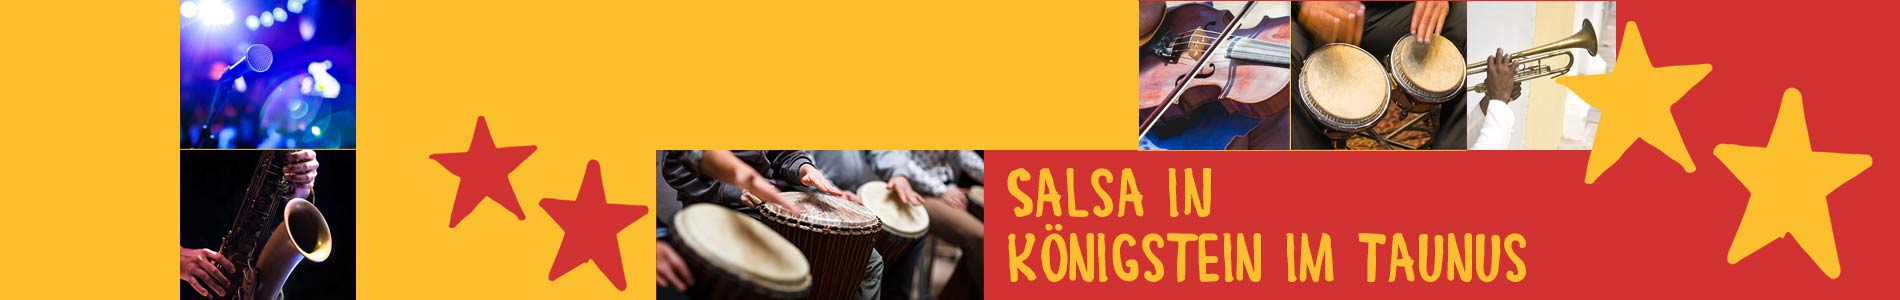 Salsa in Königstein im Taunus – Salsa lernen und tanzen, Tanzkurse, Partys, Veranstaltungen